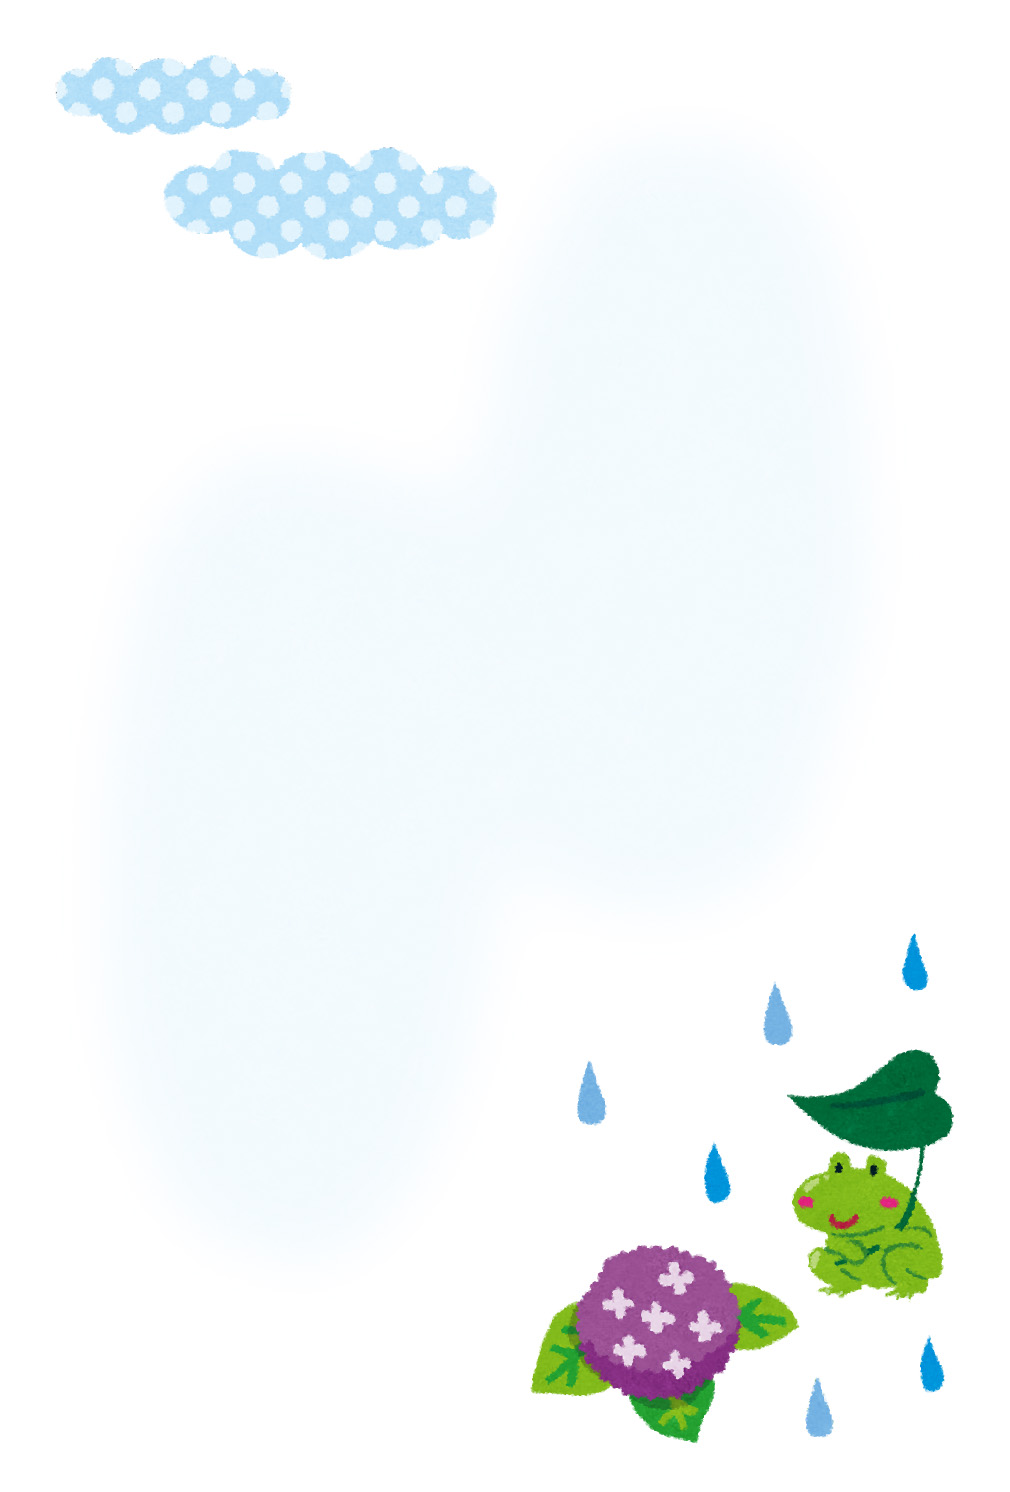 無料イラスト かわいいフリー素材集 季節のはがきのテンプレート ６月 梅雨